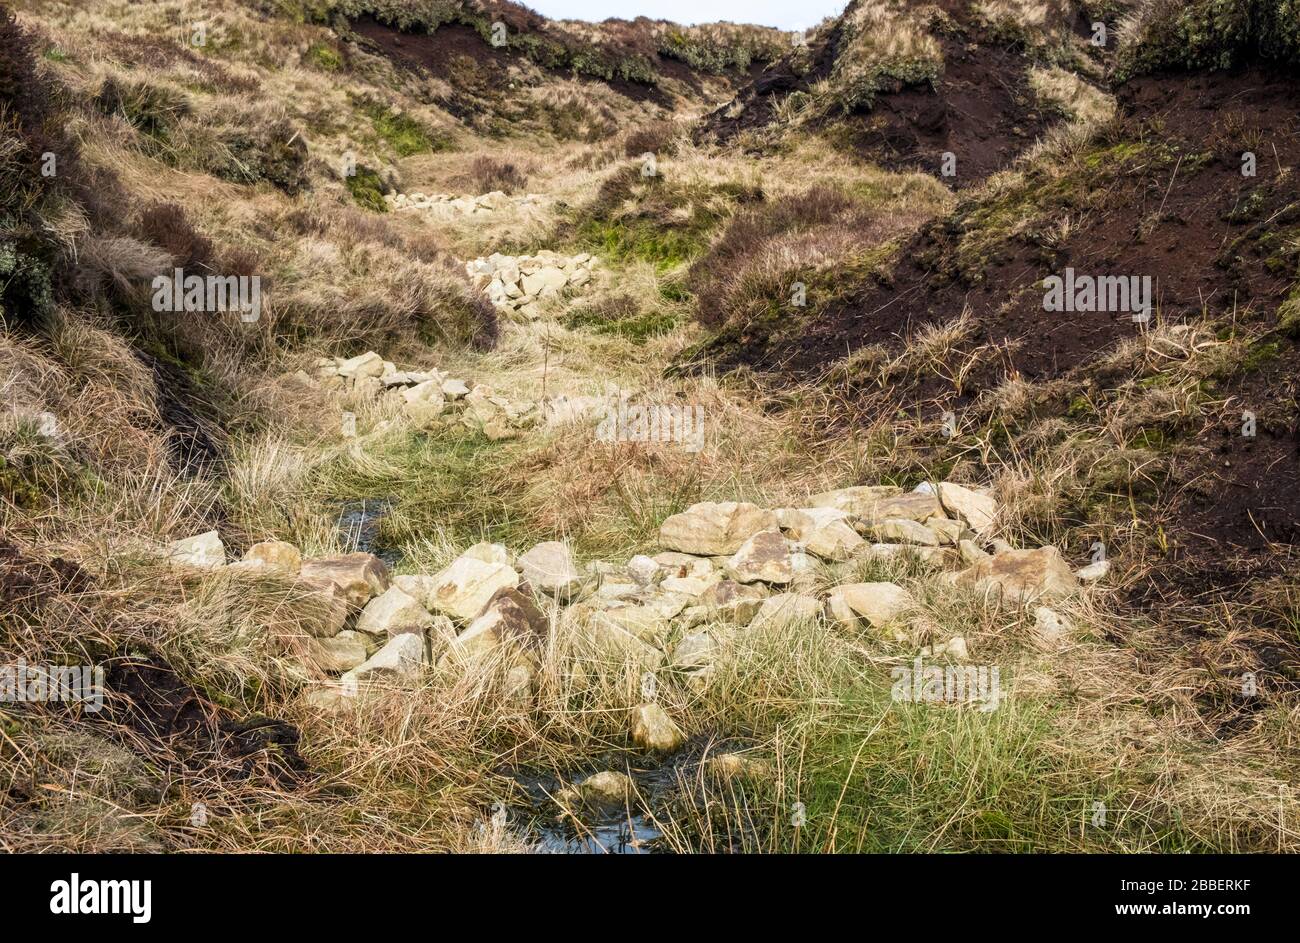 Bloqueo de barrancos usando presas de piedra que impiden la erosión del páramo. Parte del trabajo de restauración en Kinder Scout, Derbyshire, Peak District, Inglaterra, Reino Unido Foto de stock